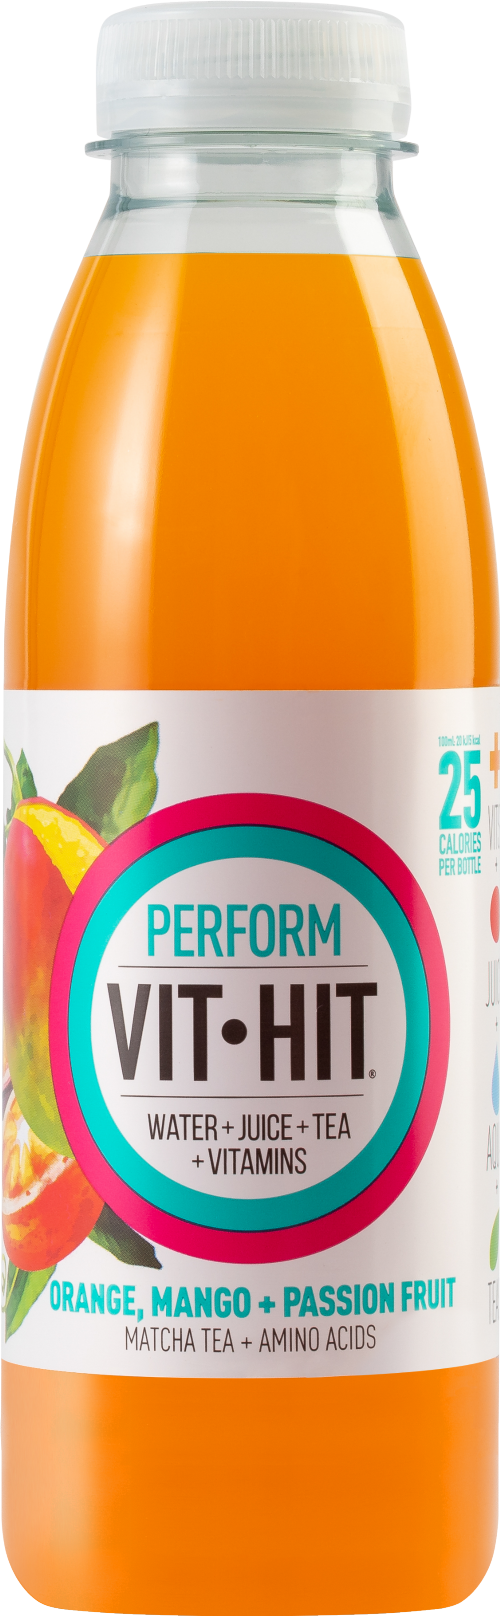 VITHIT Perform - Orange, Mango & Passionfruit 500ml